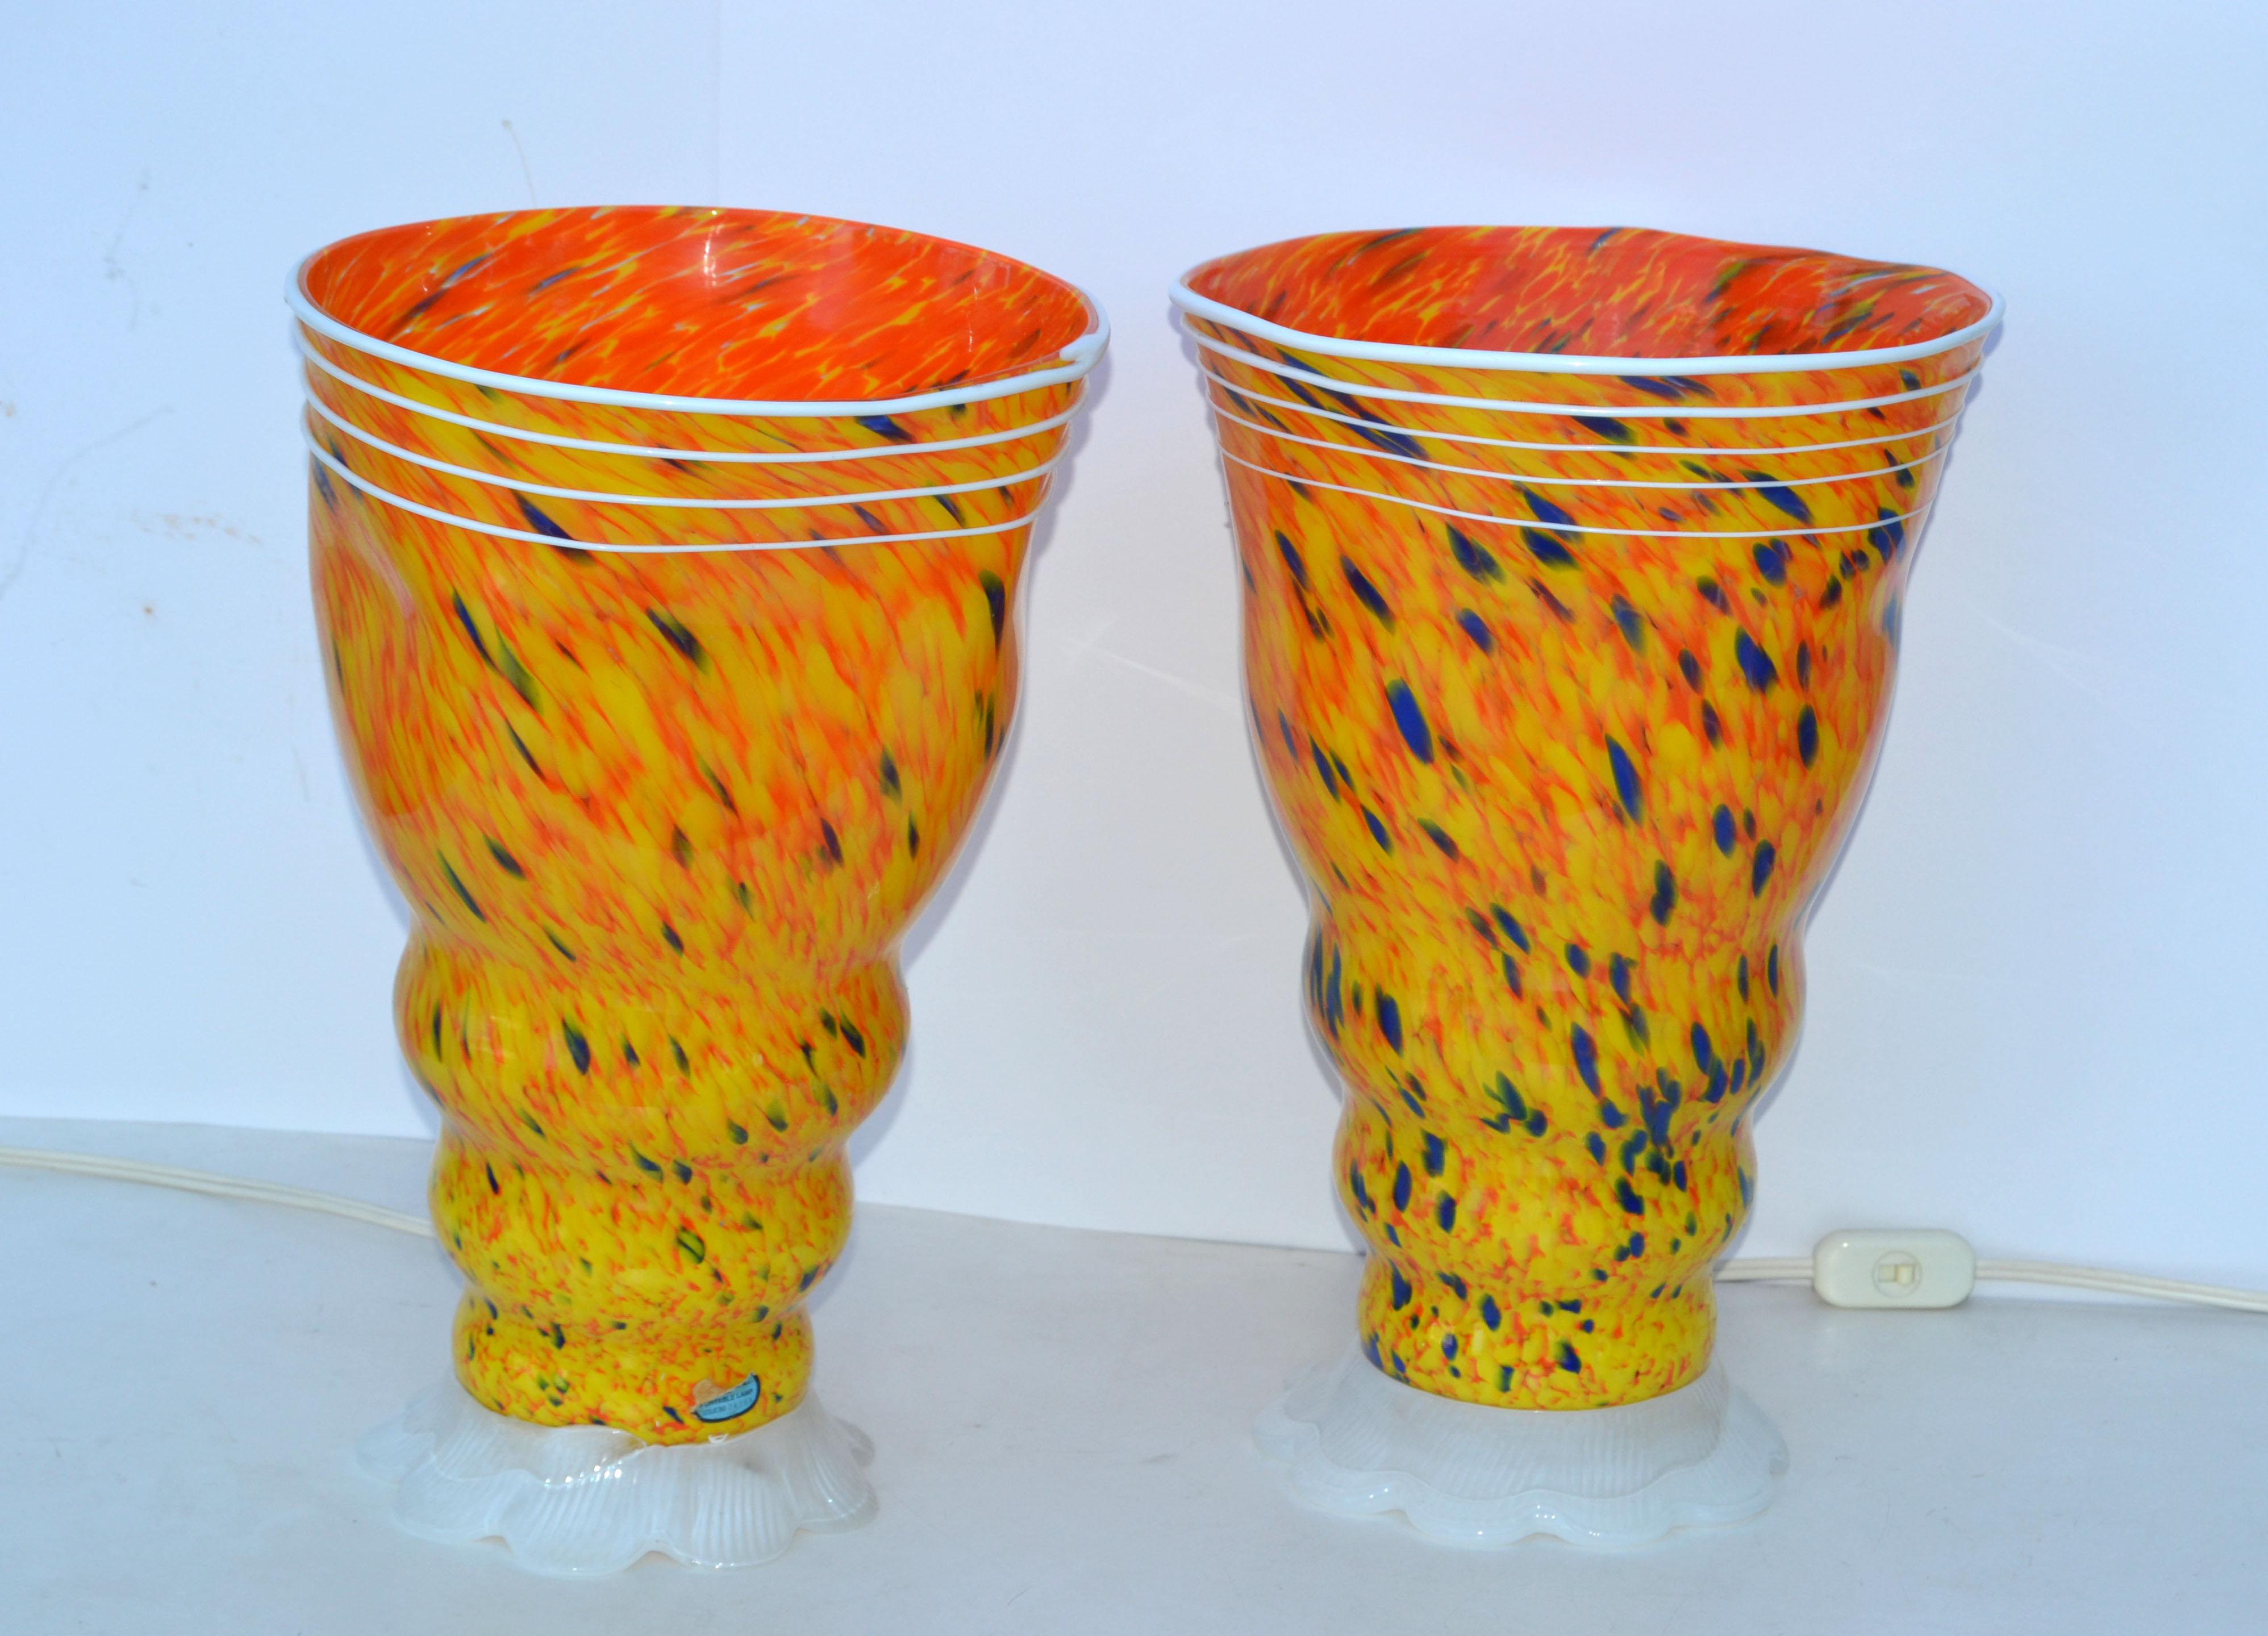 Superbe paire de lampes de table en verre de Murano soufflé de forme libre dans des tons de jaune, orange, bleu et blanc par Barovier & Toso, fabriquées en Italie dans les années 1980.
Recâblée aux États-Unis, homologuée UL et en état de marche,